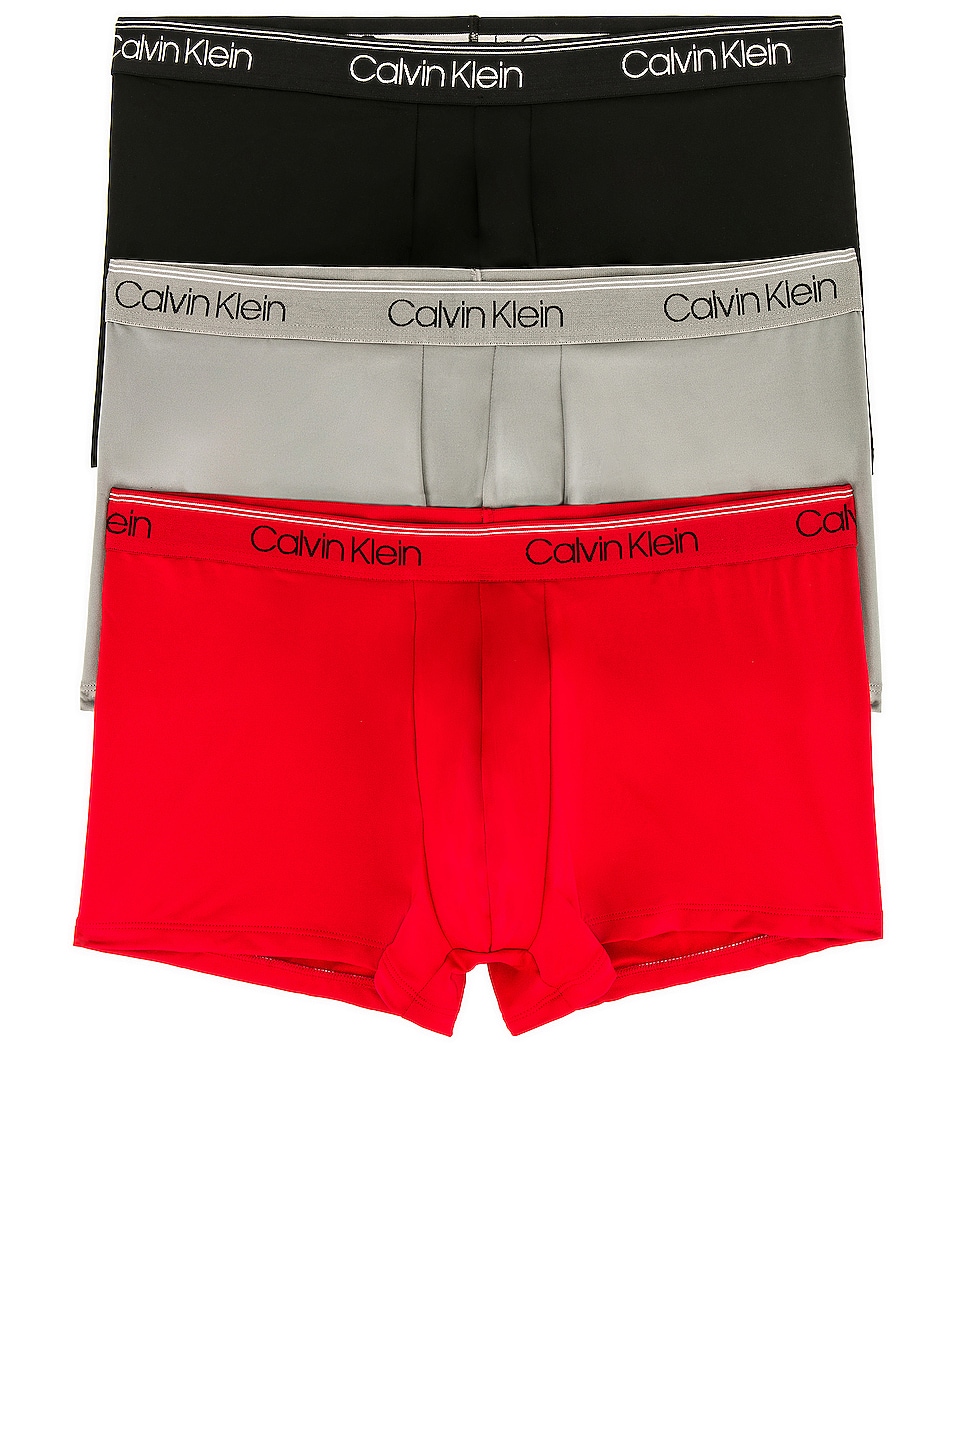 Calvin Klein Underwear Calvin Klein Low Rise Trunk 3 Piece Set in Black,  Convoy, & Red Gala